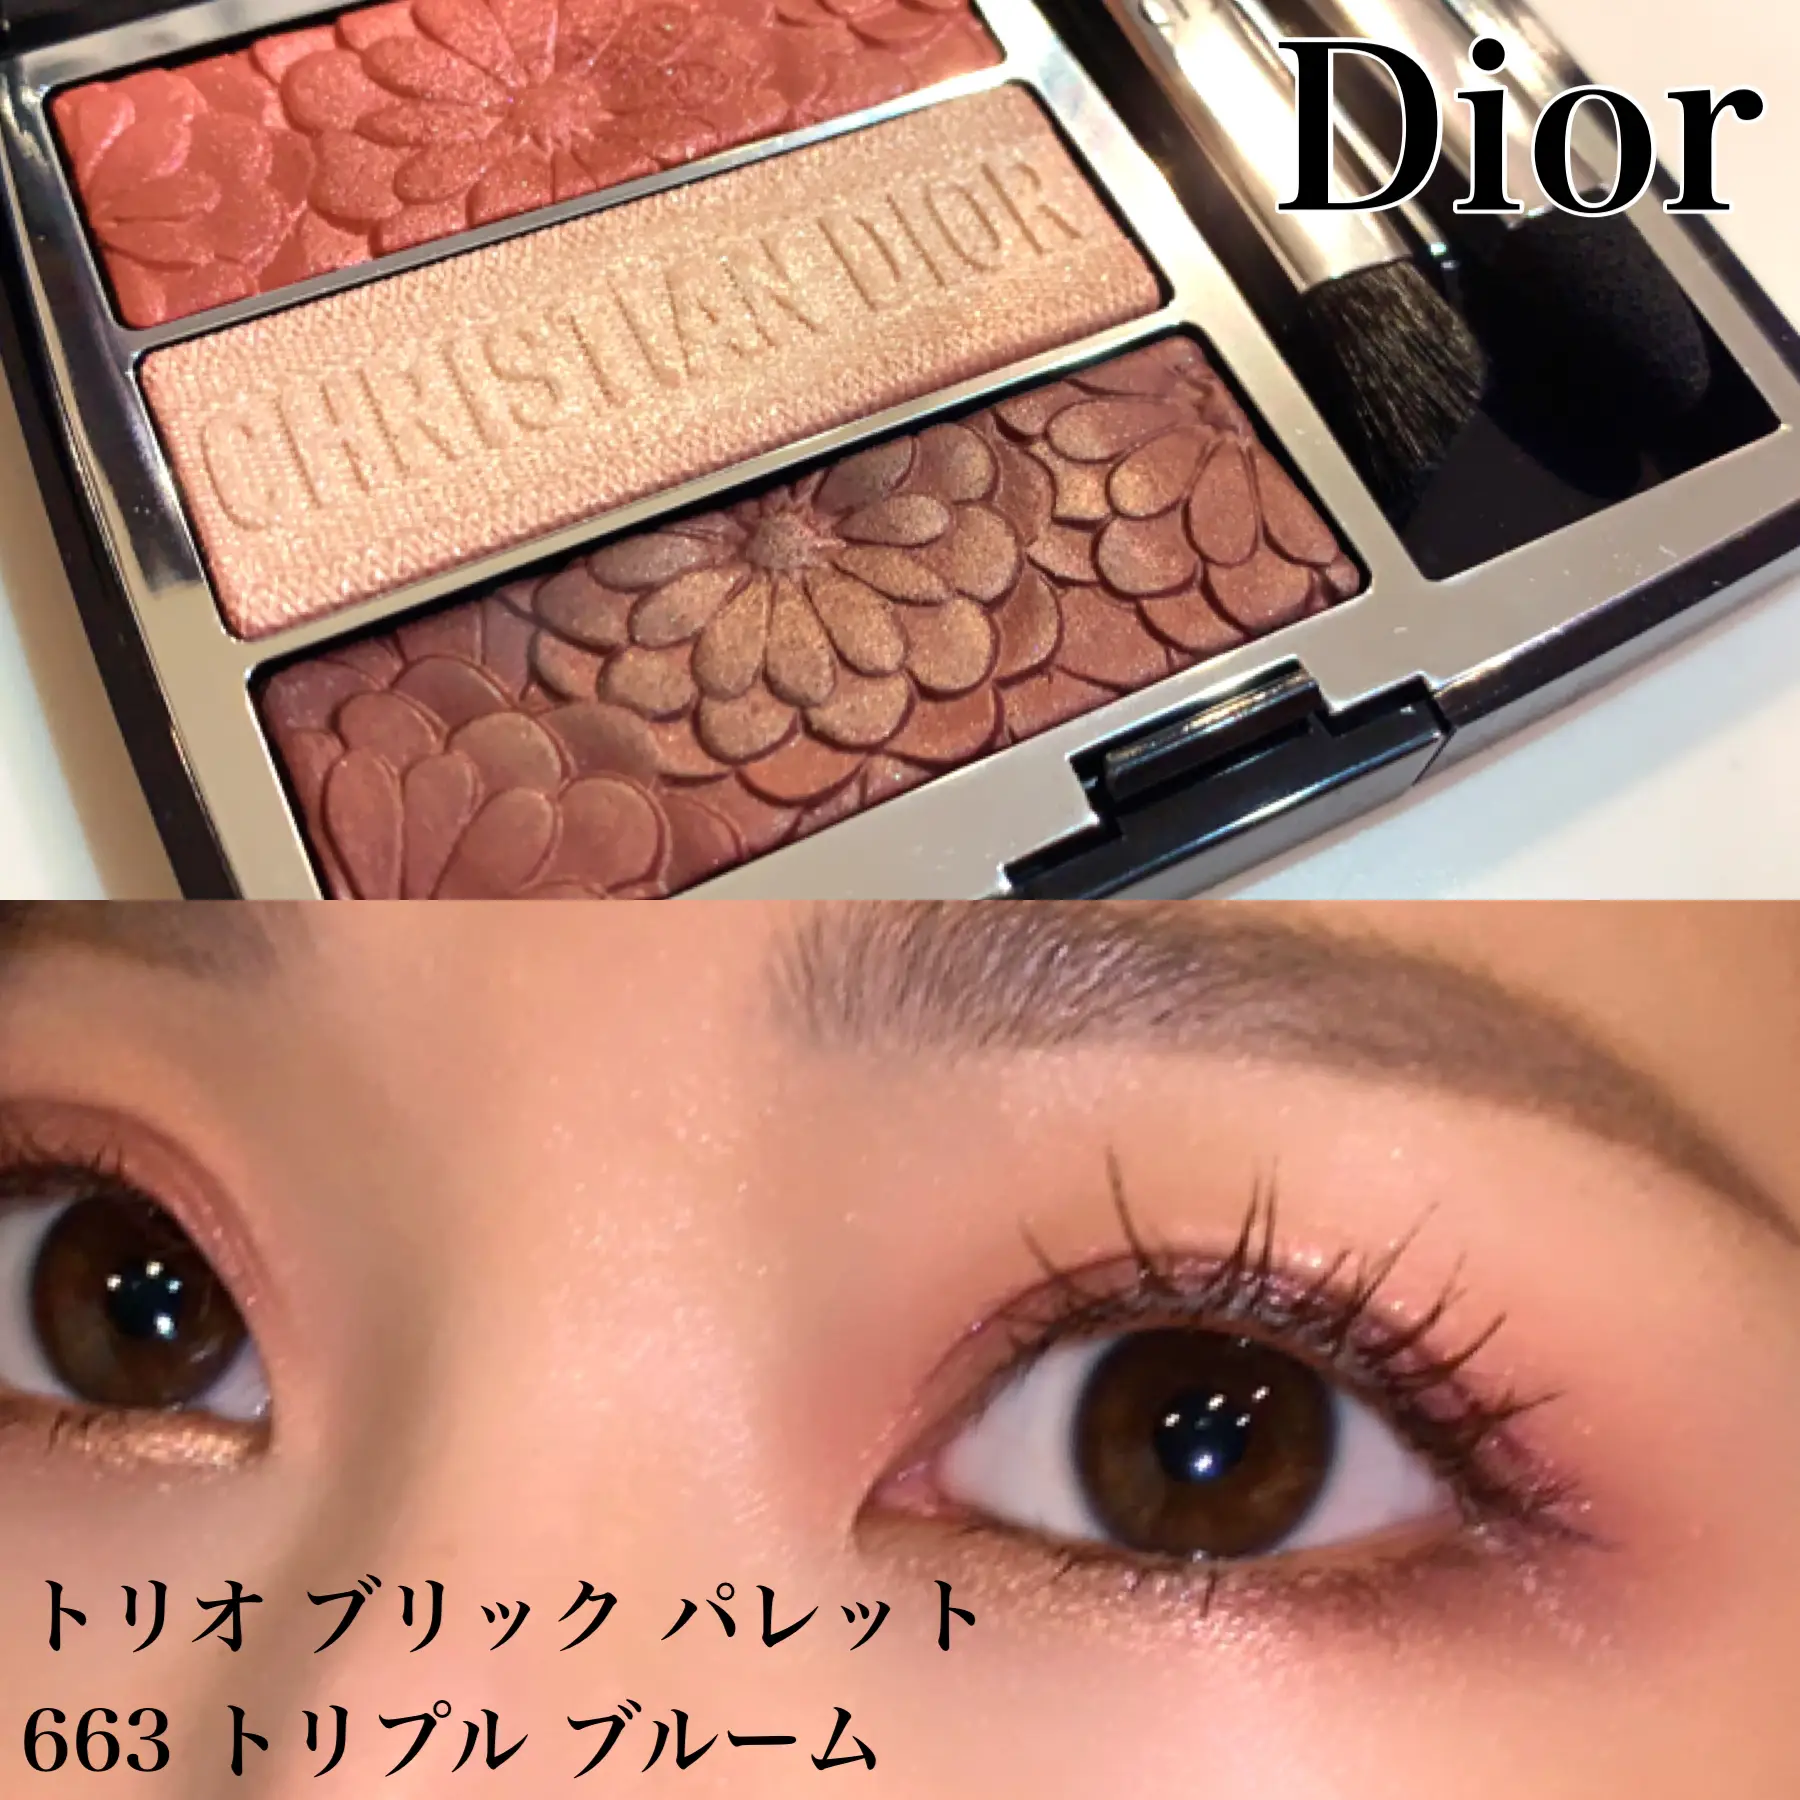 Diorの春🌸トリオブリックパレット663 | einaが投稿したフォトブック ...